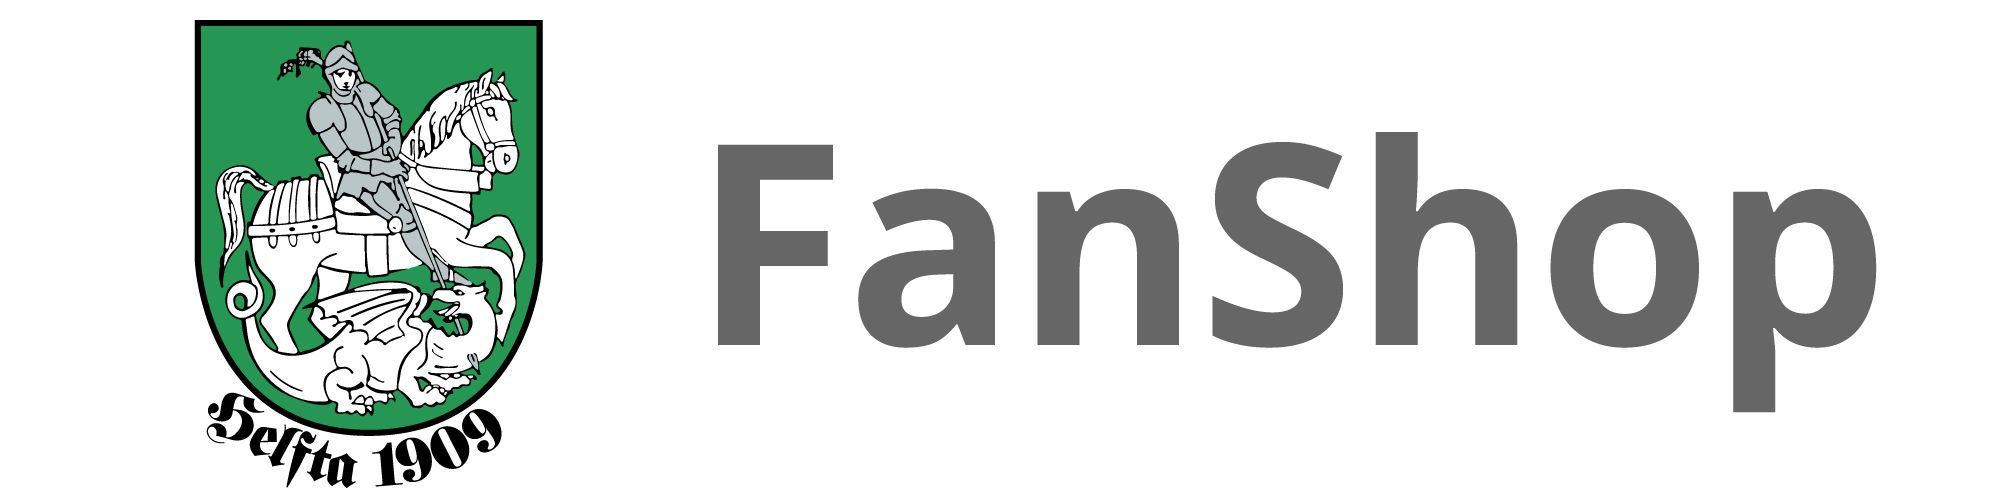 CS FanShop Aufbau Eisleben